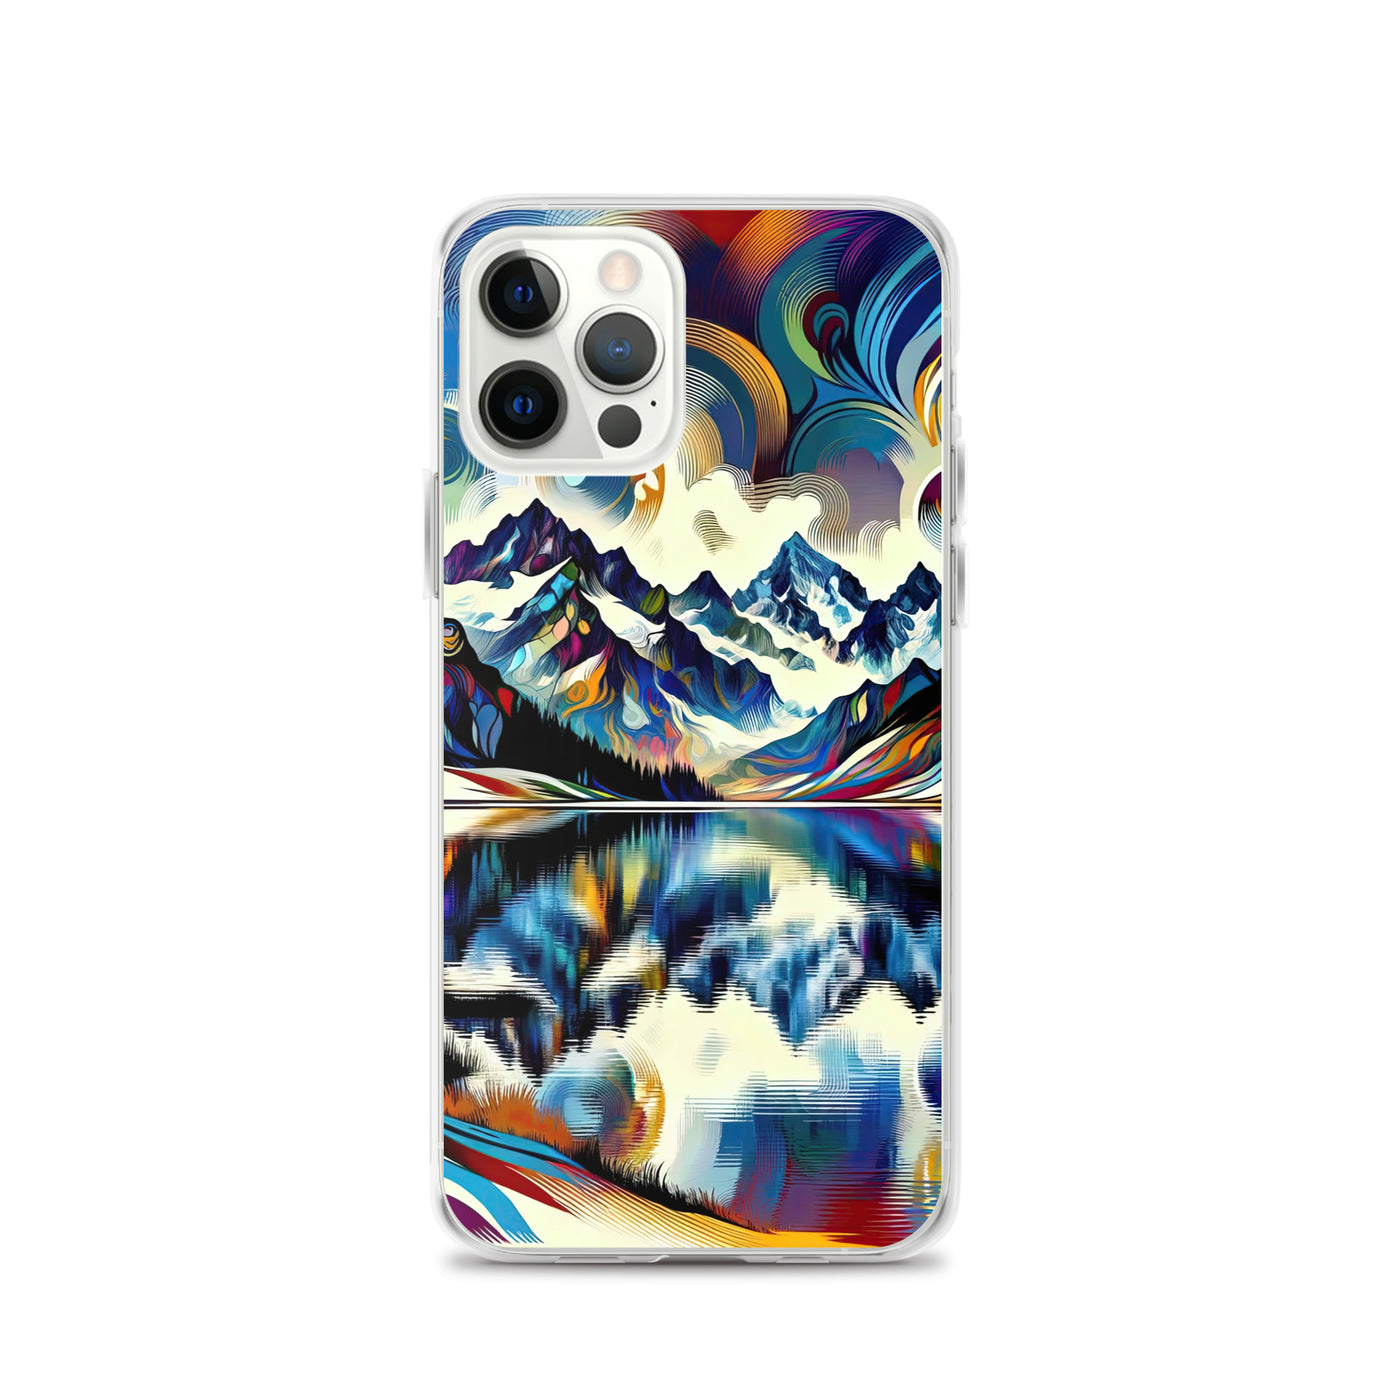 Alpensee im Zentrum eines abstrakt-expressionistischen Alpen-Kunstwerks - iPhone Schutzhülle (durchsichtig) berge xxx yyy zzz iPhone 12 Pro